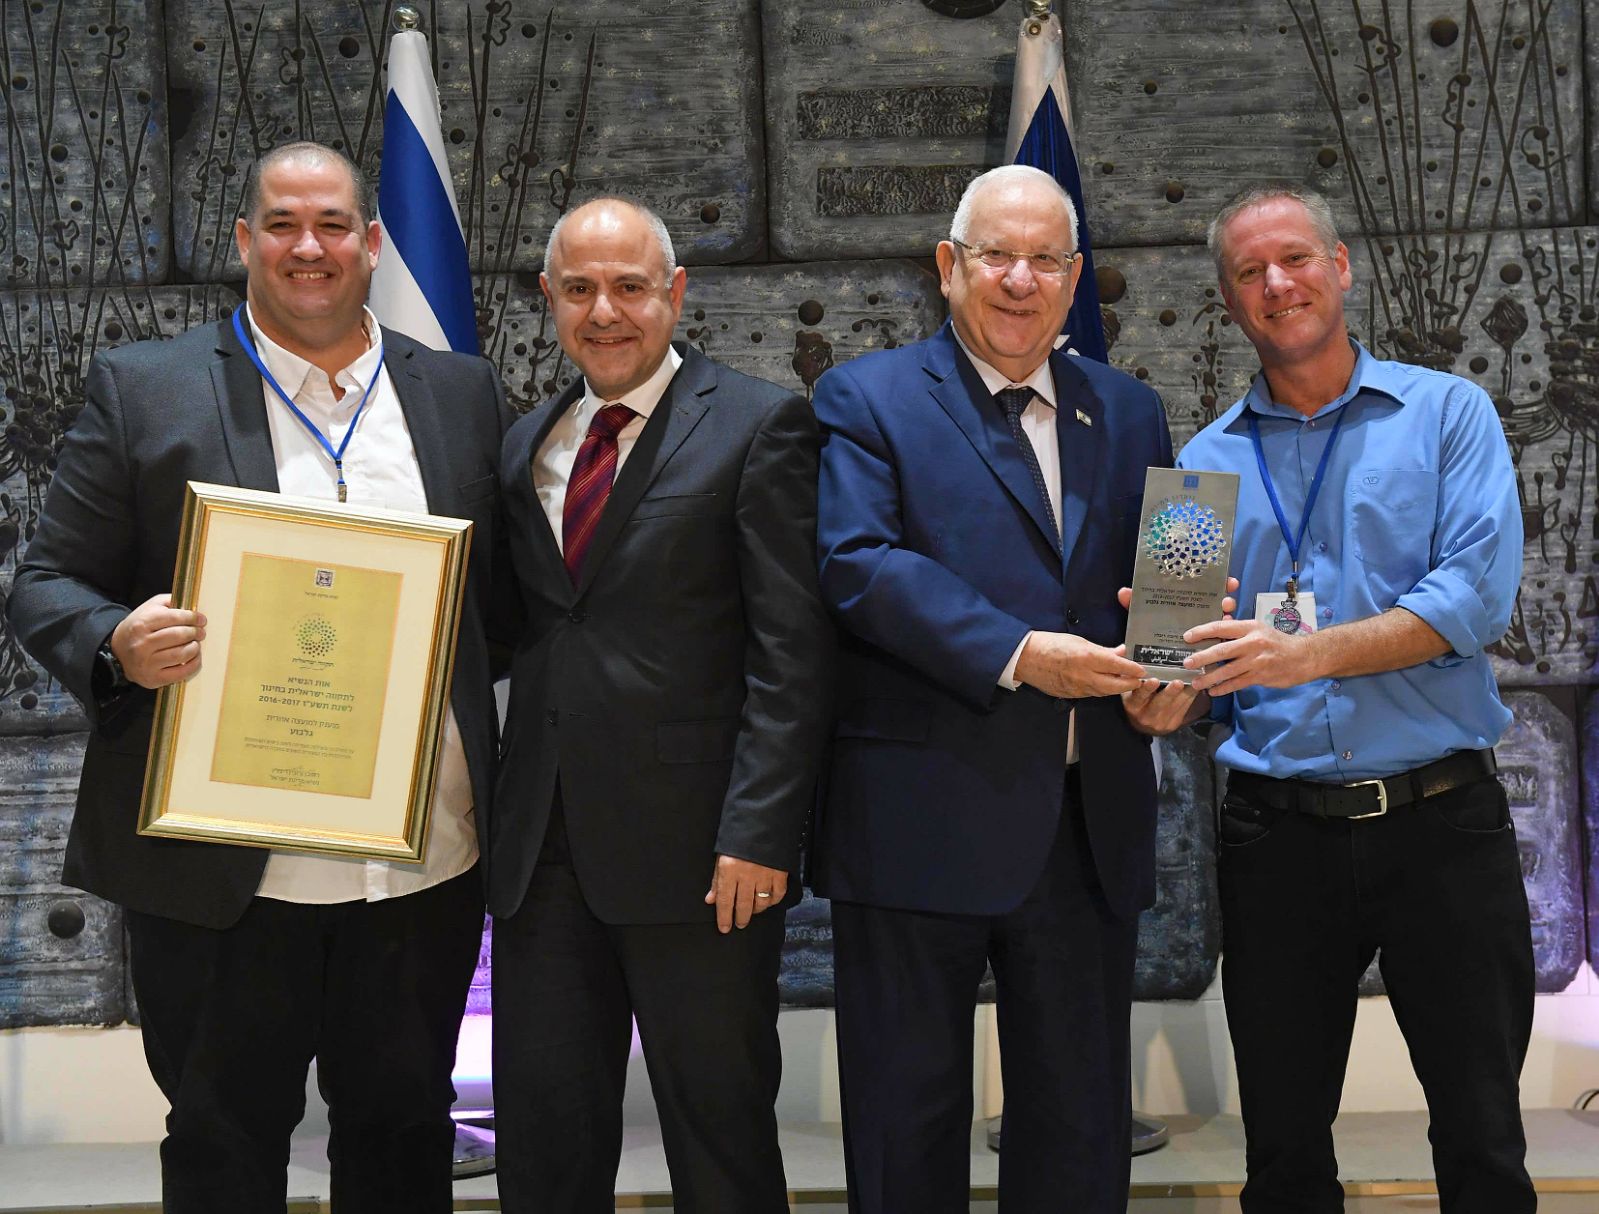 מוא"ז הגלבוע זכתה לקבל מידי נשיא המדינה את "אות לתקווה ישראלית בחינוך לרשויות מקומיות" 